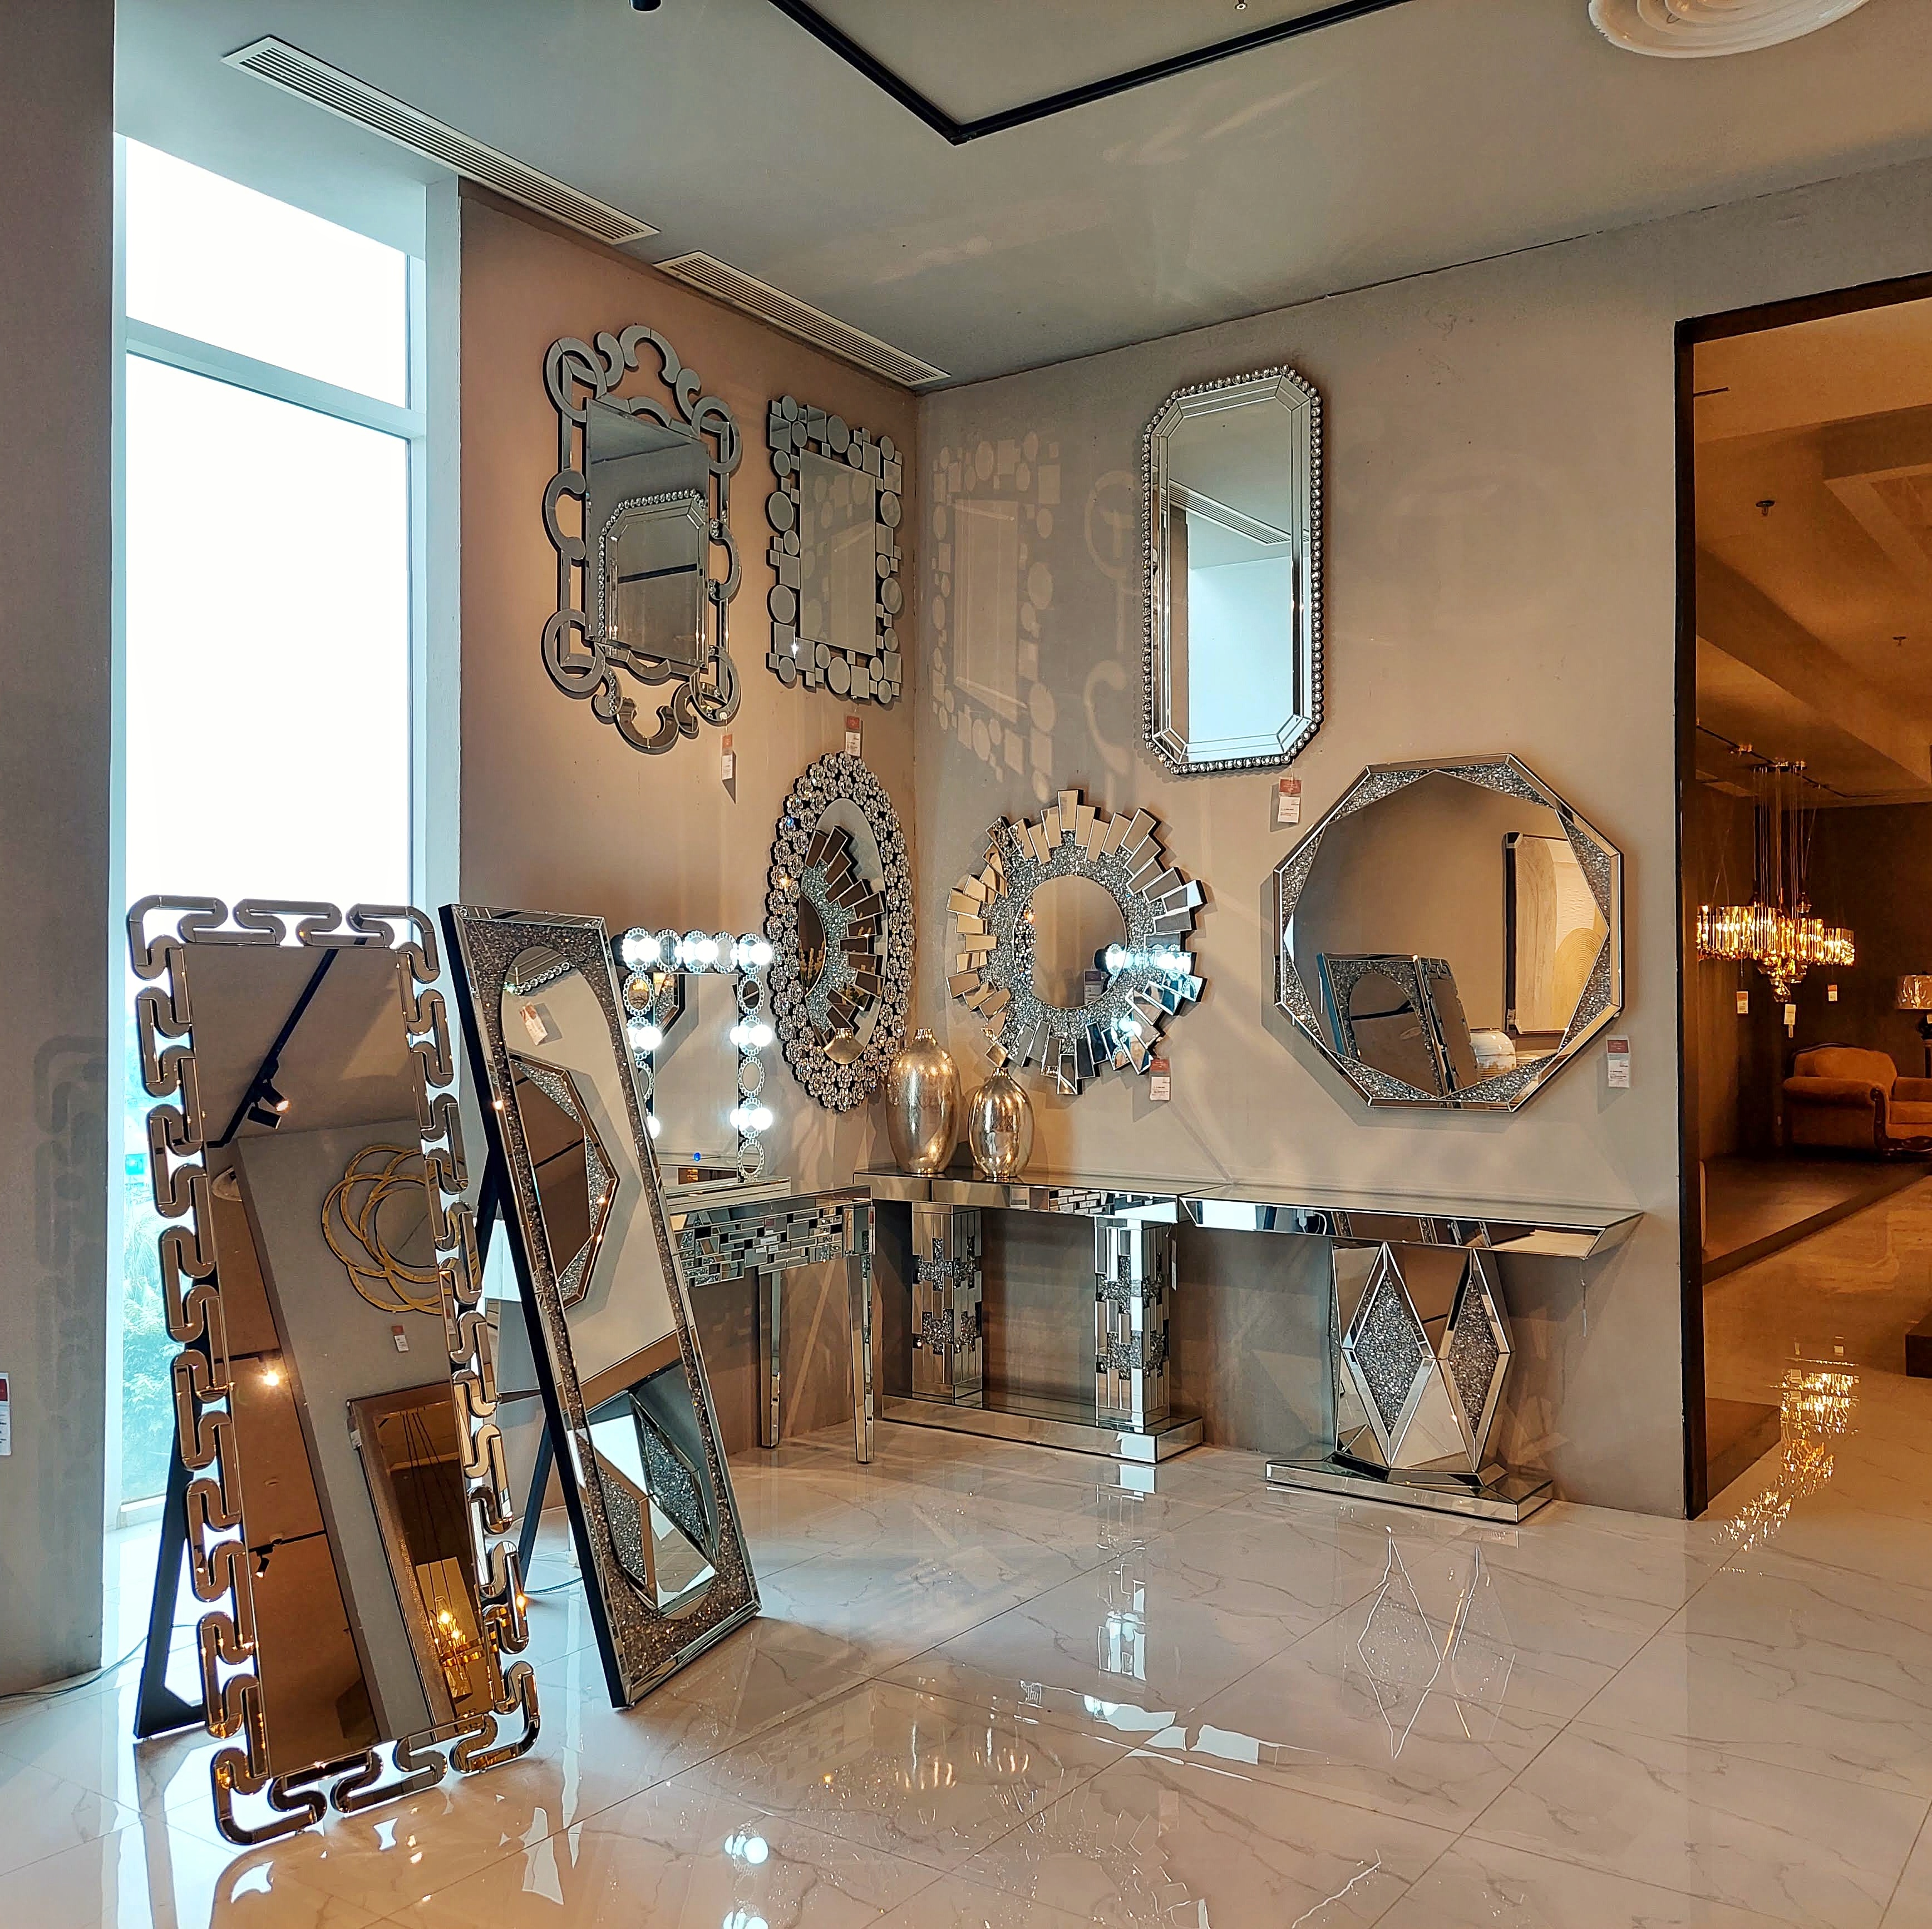  홈 갤러리아 리빙 몰의 조명 갤러리에 전시된 거울 및 조명 전경 ⓒ 스텔라의 주부사전 